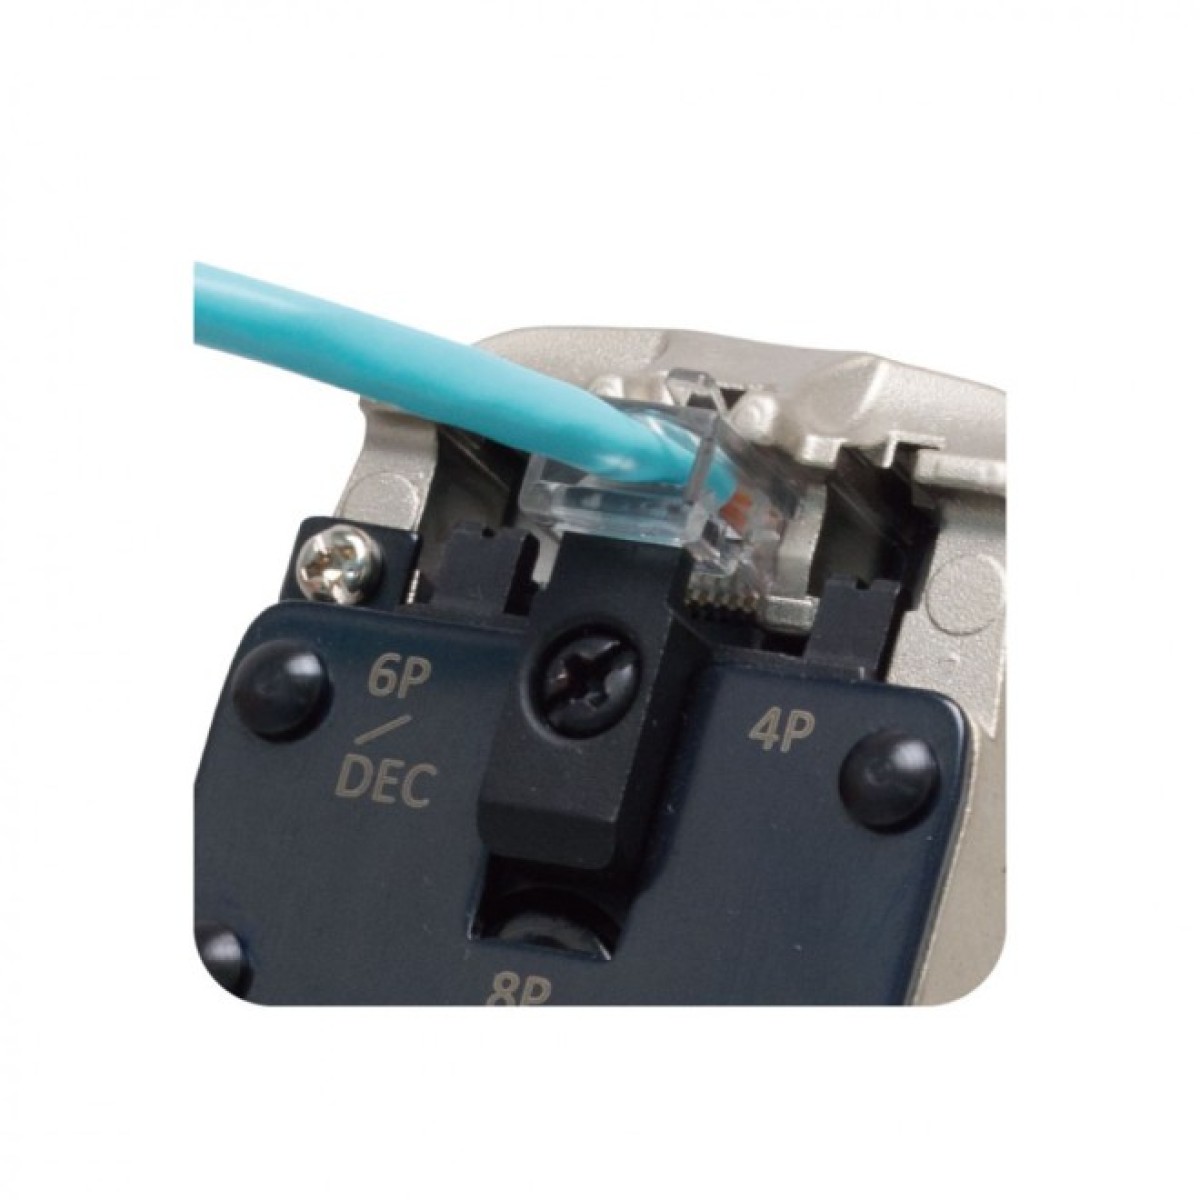 Інструмент для обтискання конекторів 4P/6P/8P/DEC Premium, професійний, Hanlong 98_98.jpg - фото 4